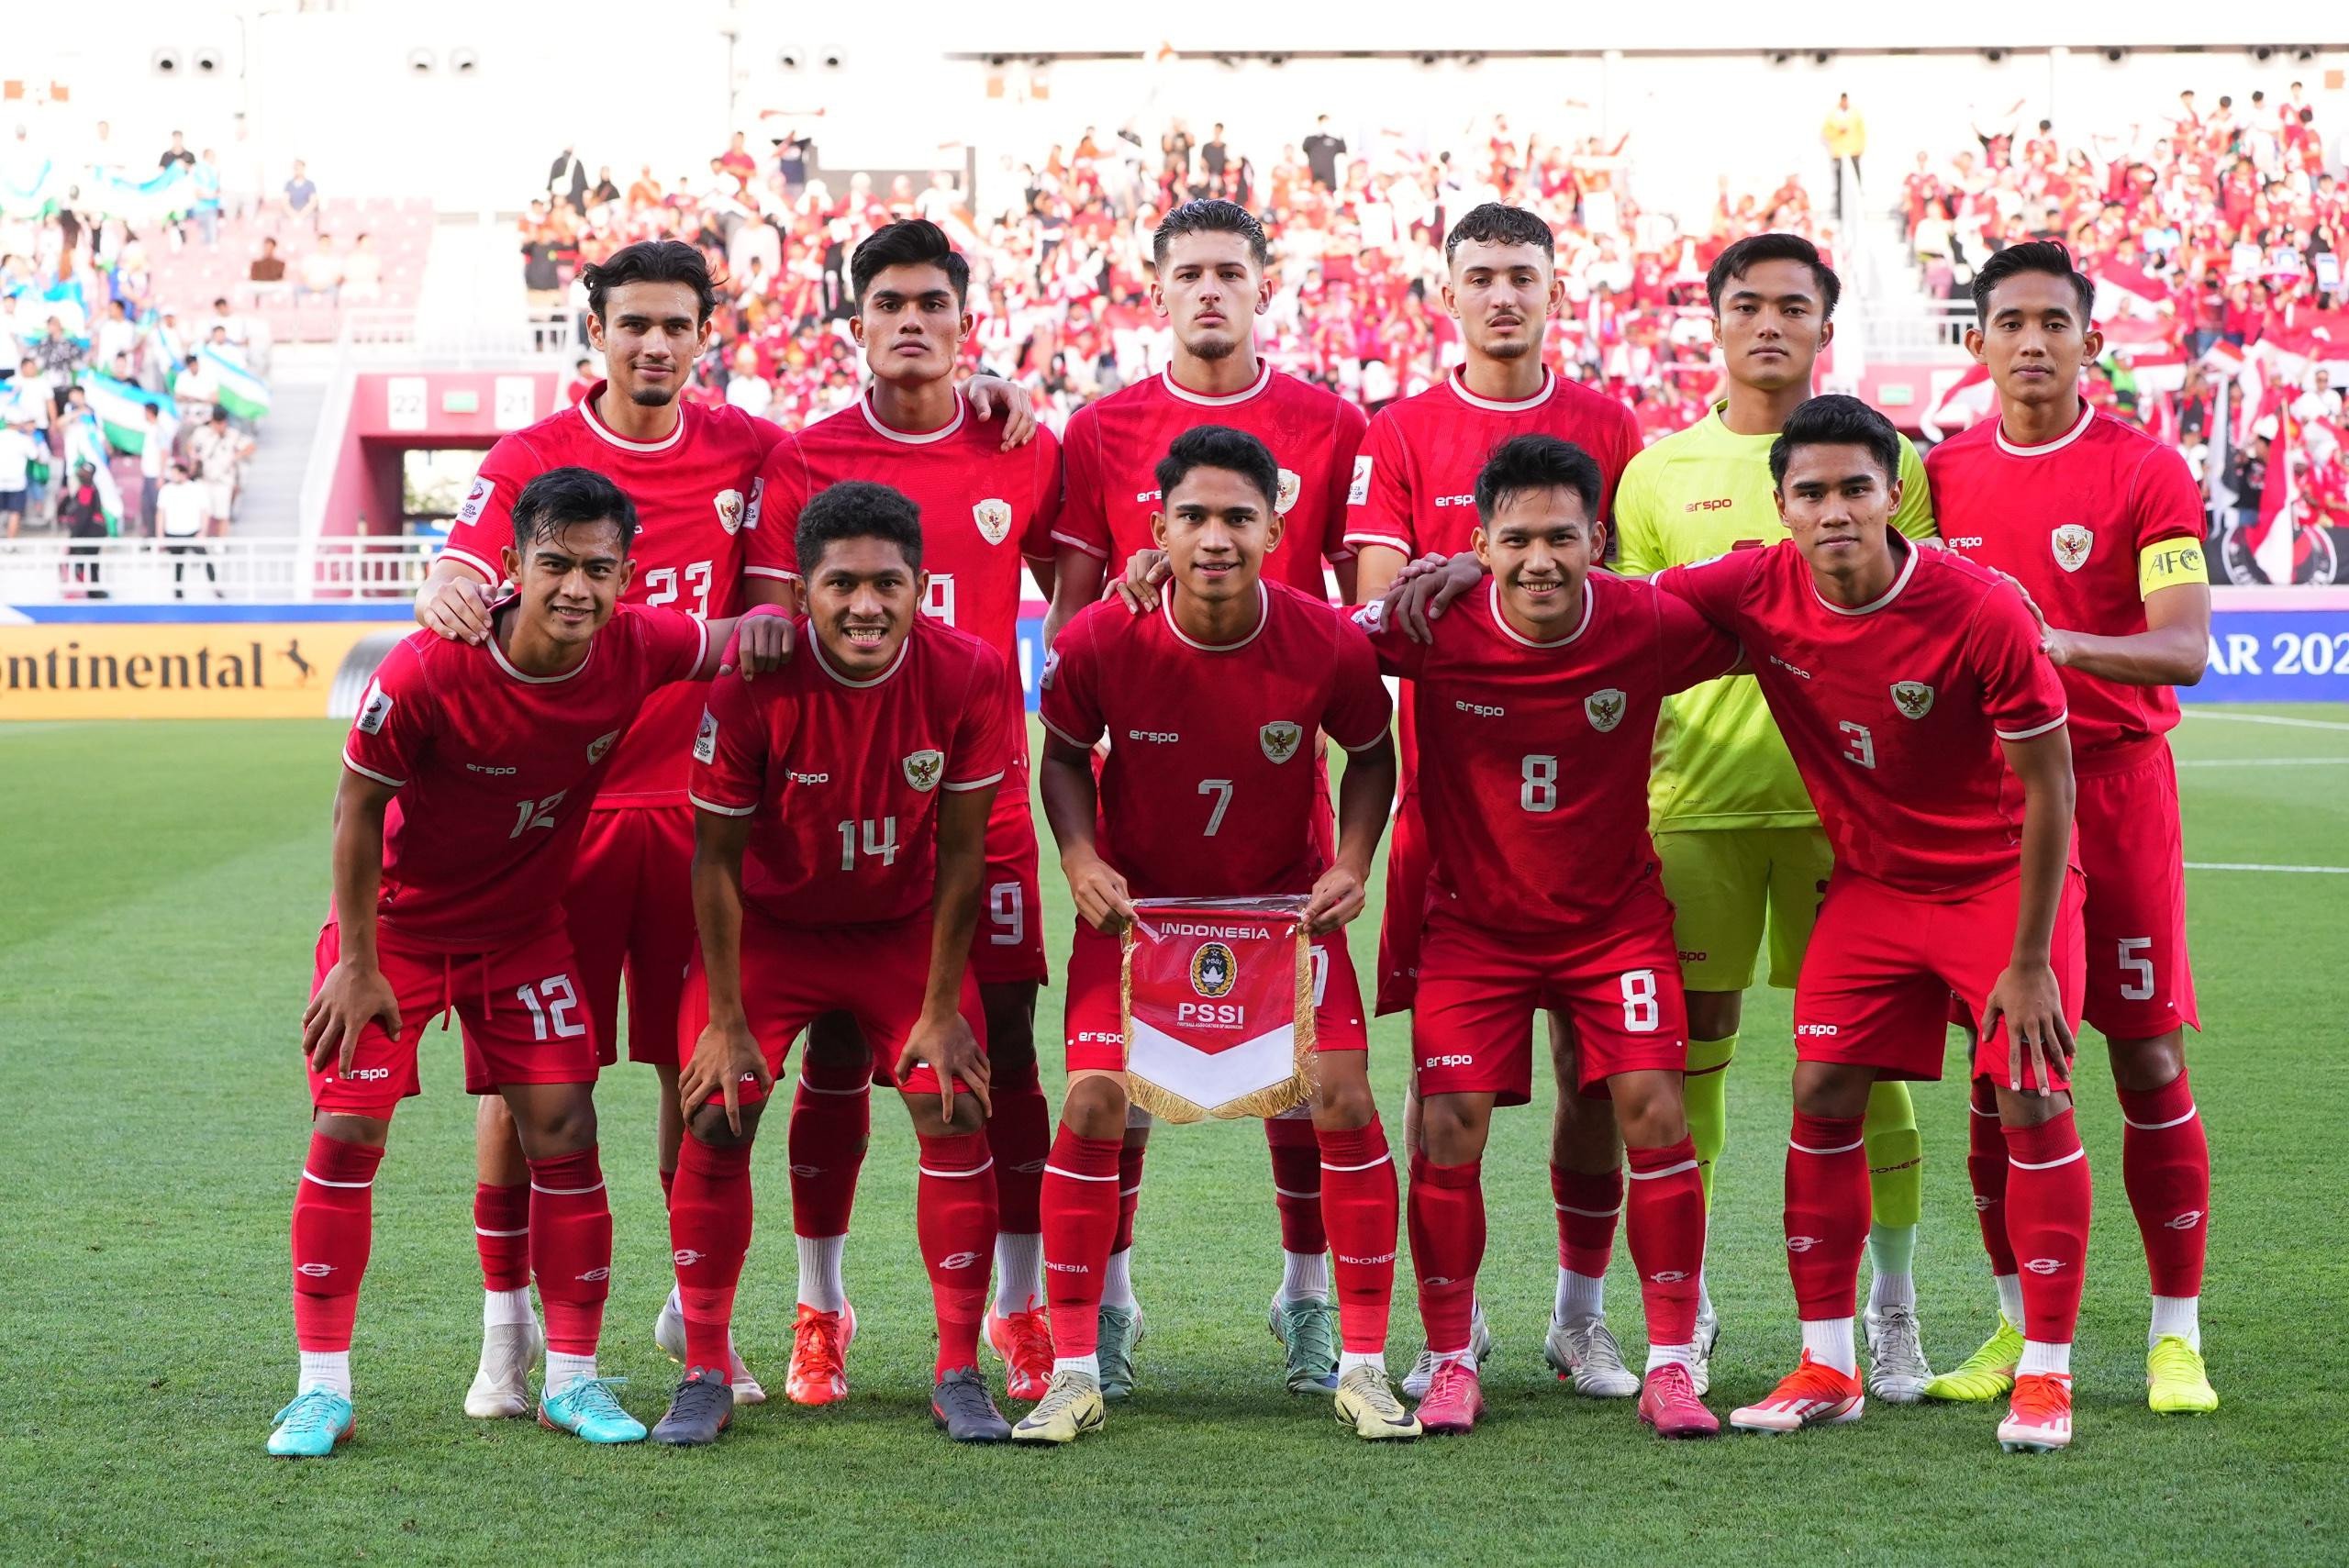 Timnas U-23 Indonesia vs Irak: Saran untuk STY agar Garuda Muda Menang - JPNN.com